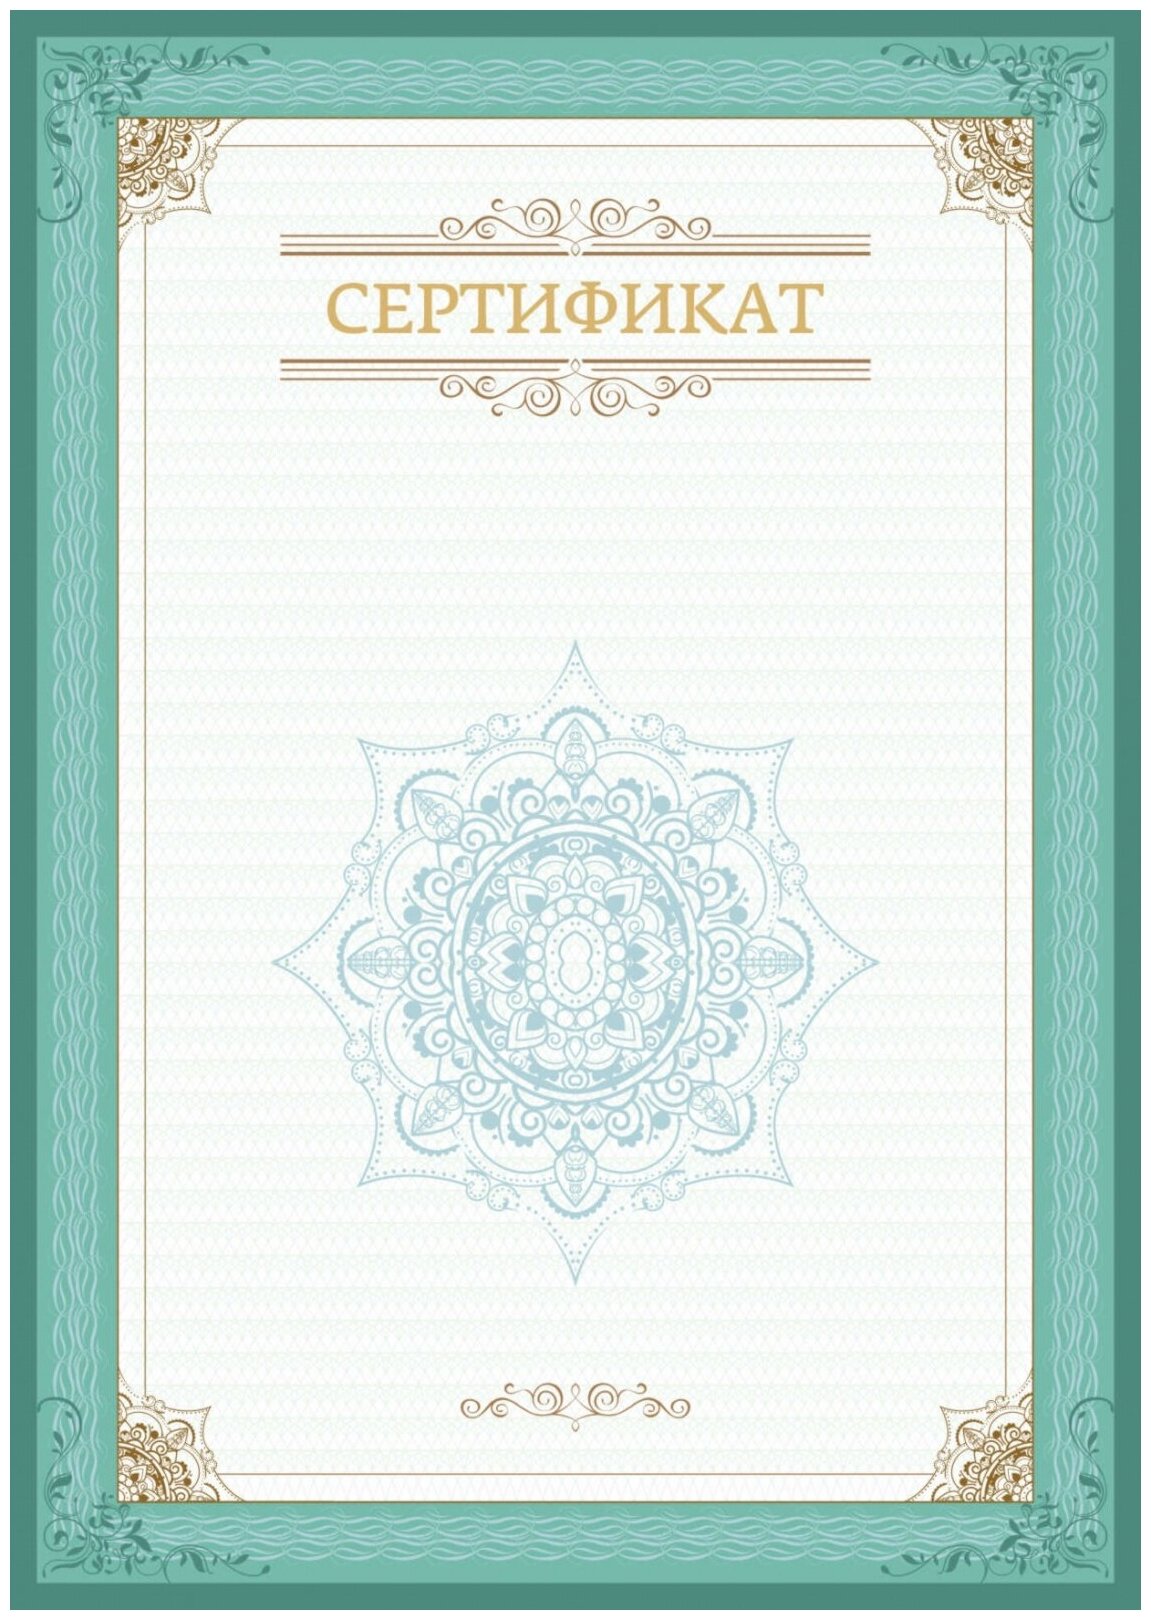 Сертификат КНР А4, вертикальный бланк, зеленая рамка, тиснение фольгой